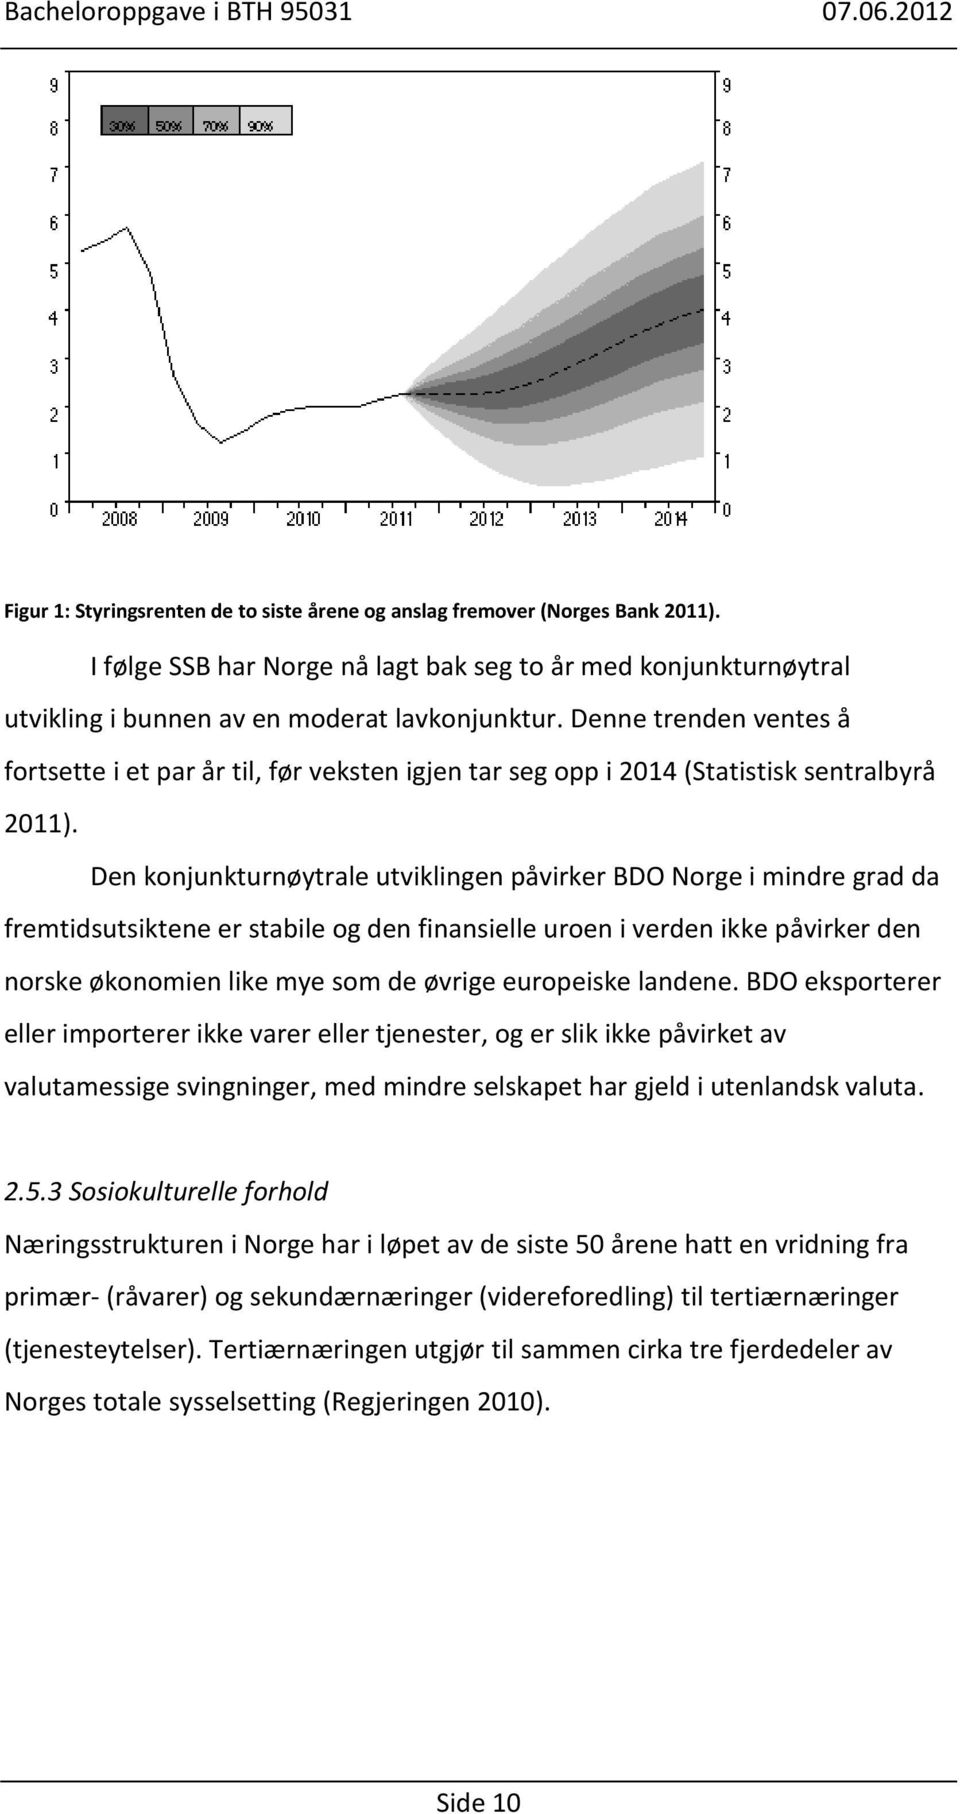 Den konjunkturnøytrale utviklingen påvirker BDO Norge i mindre grad da fremtidsutsiktene er stabile og den finansielle uroen i verden ikke påvirker den norske økonomien like mye som de øvrige